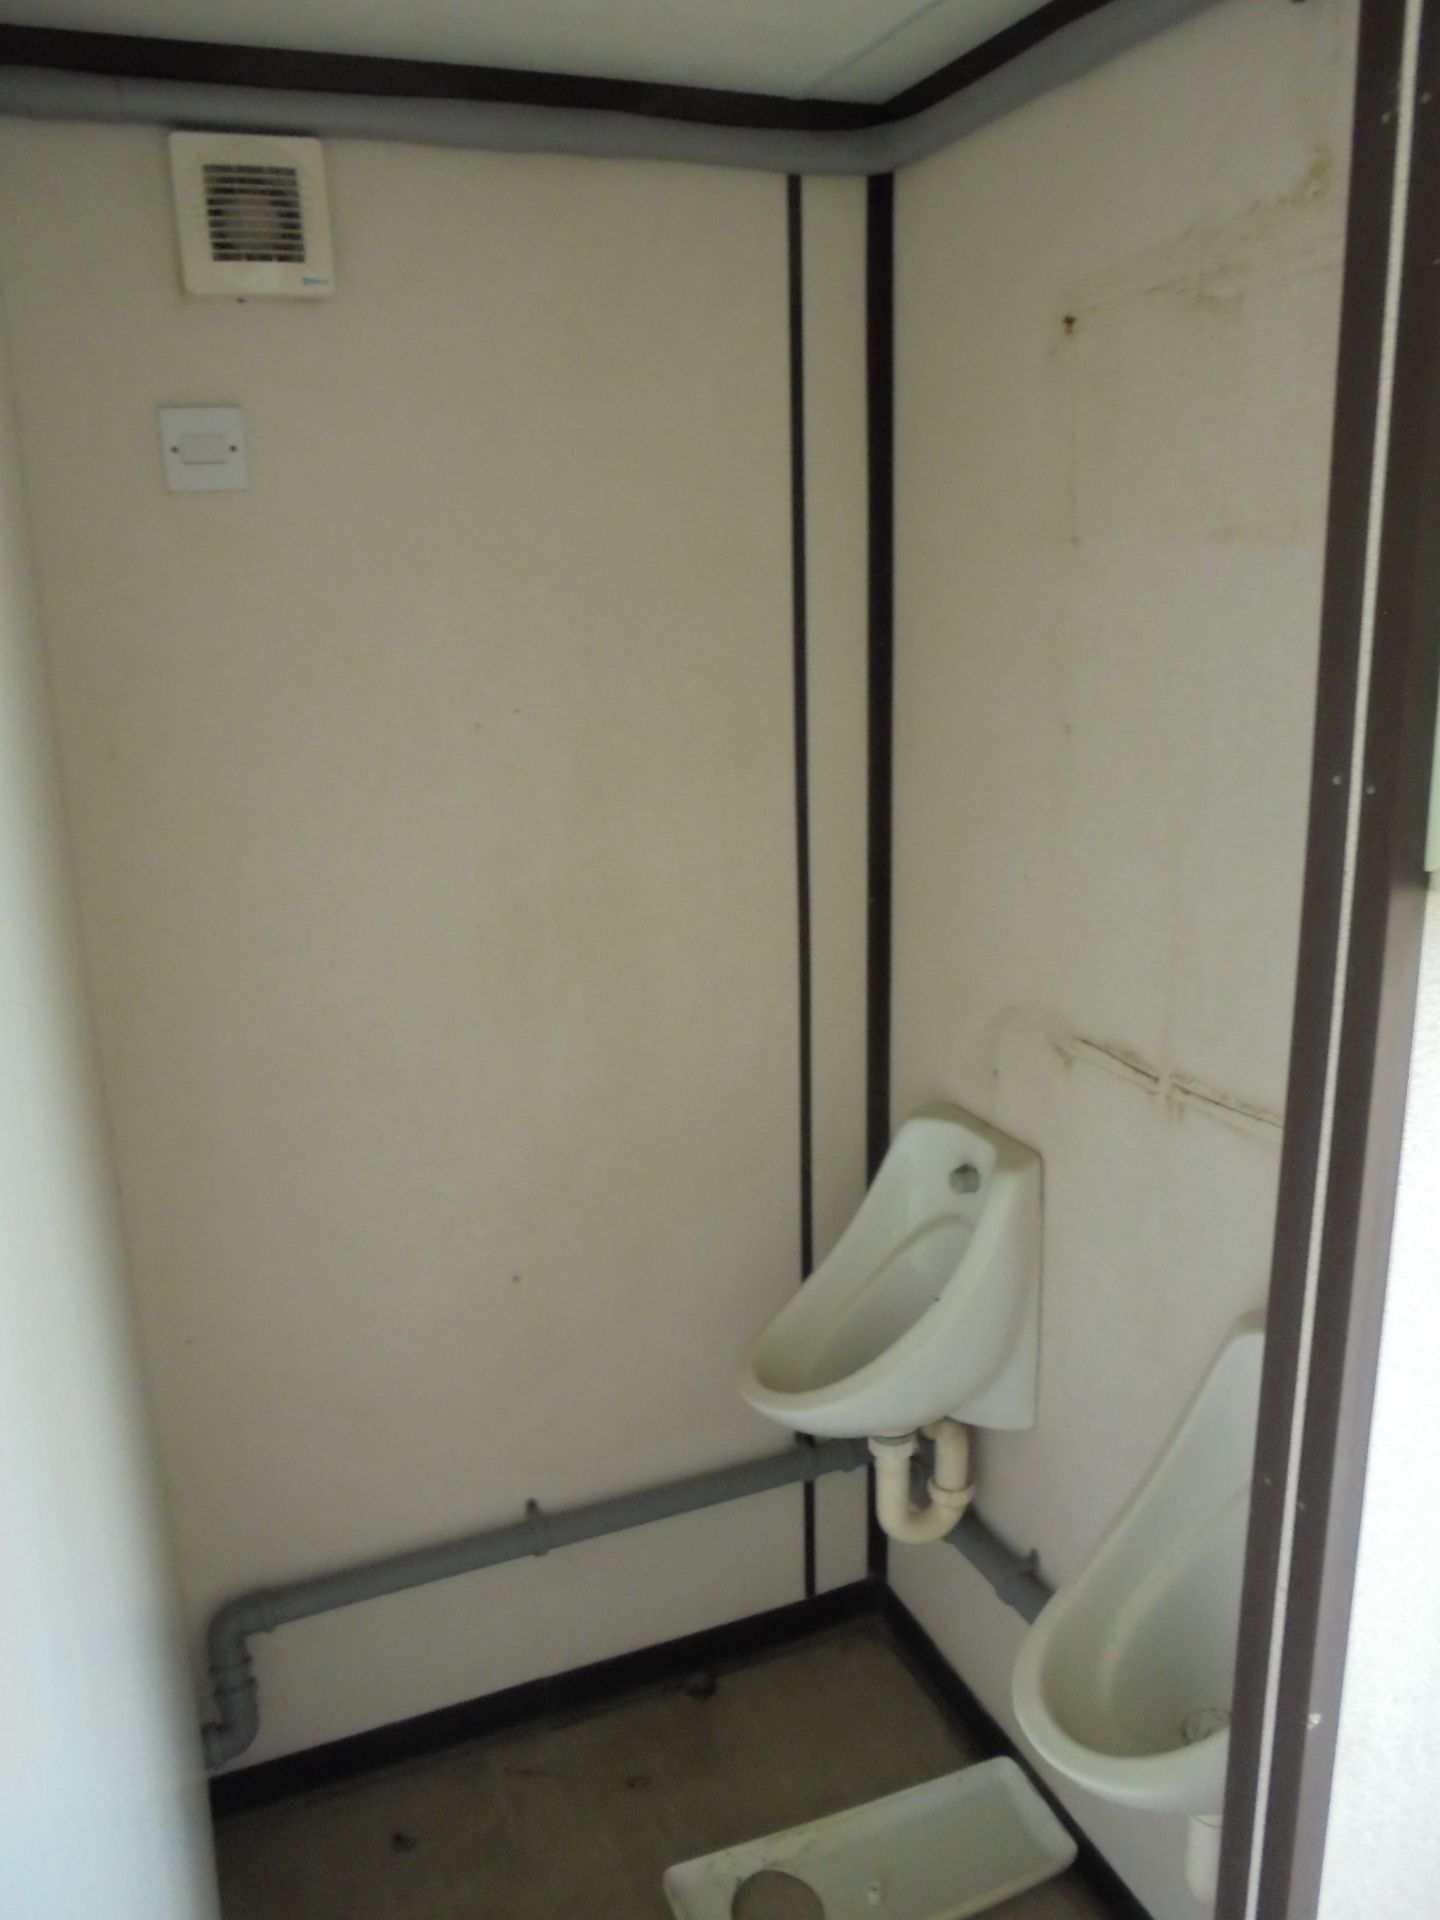 E69204 12ft x 9ft Anti Vandal 2+1 Toilet - Image 6 of 8